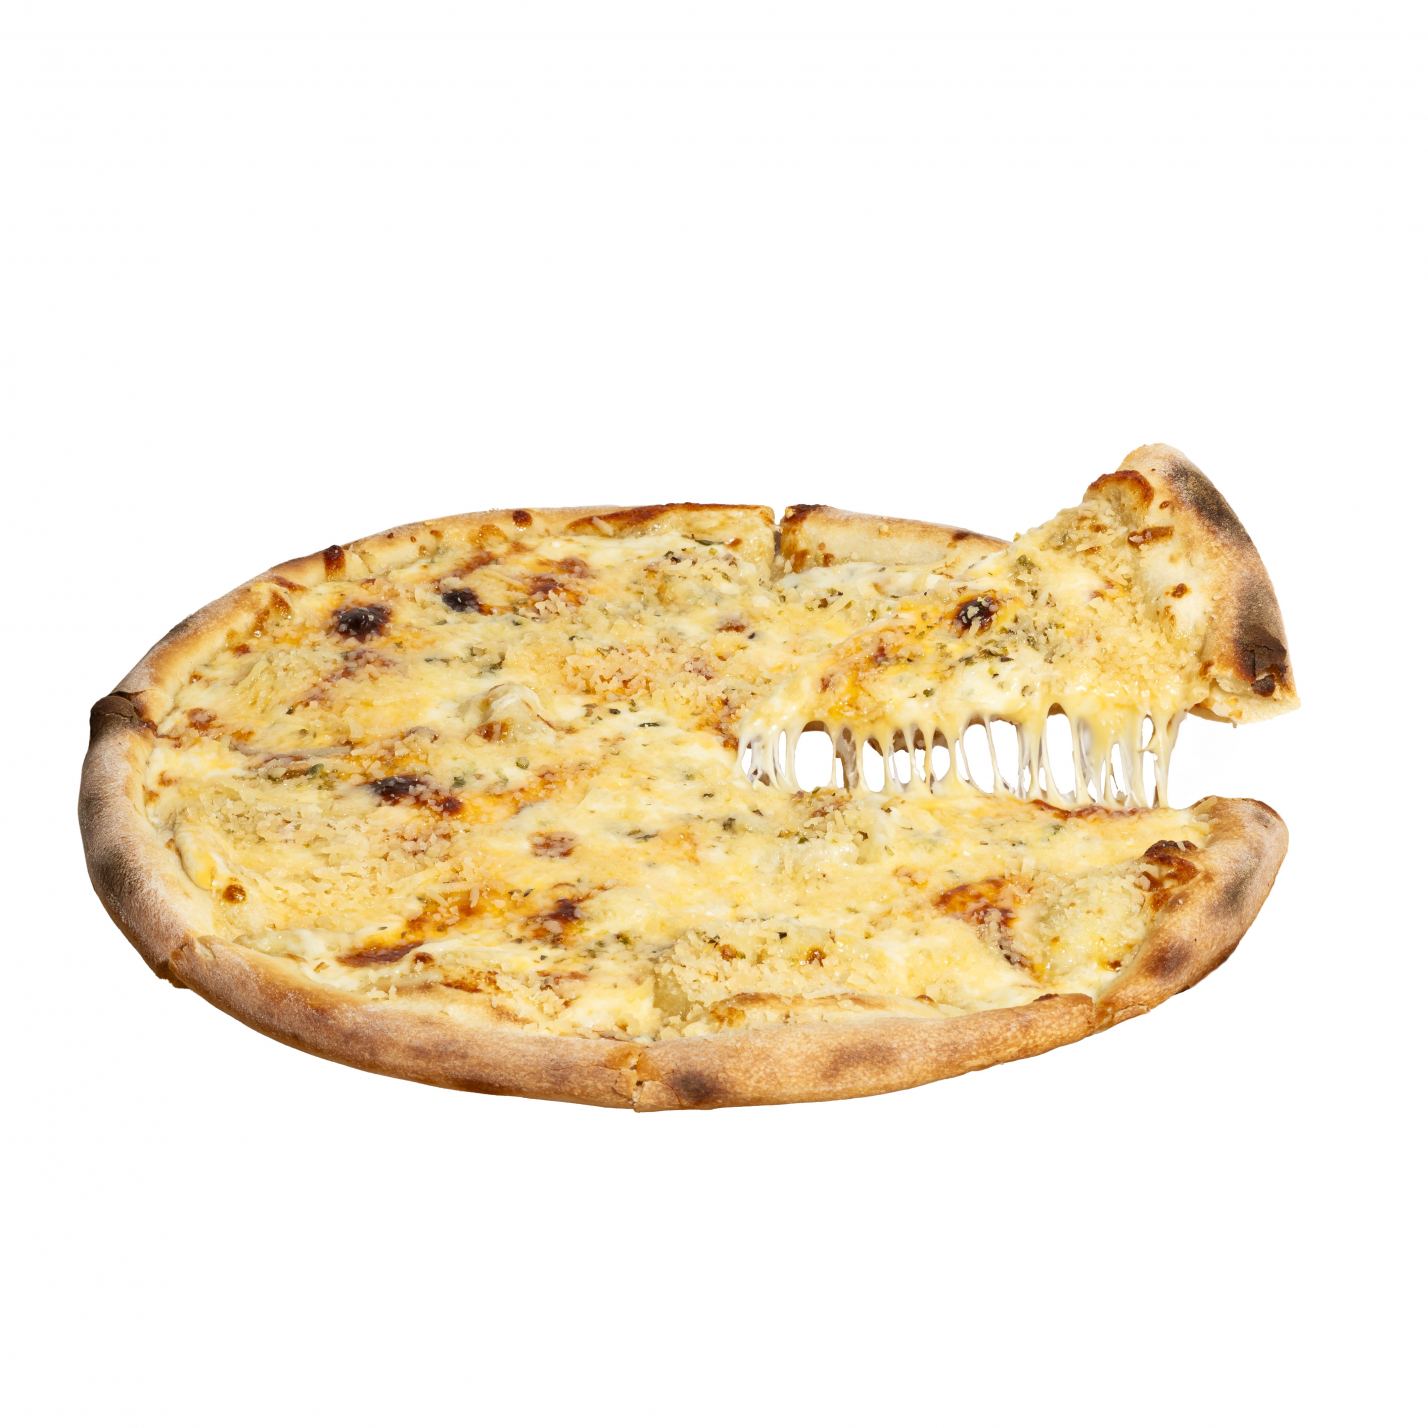 Піца 4 сира